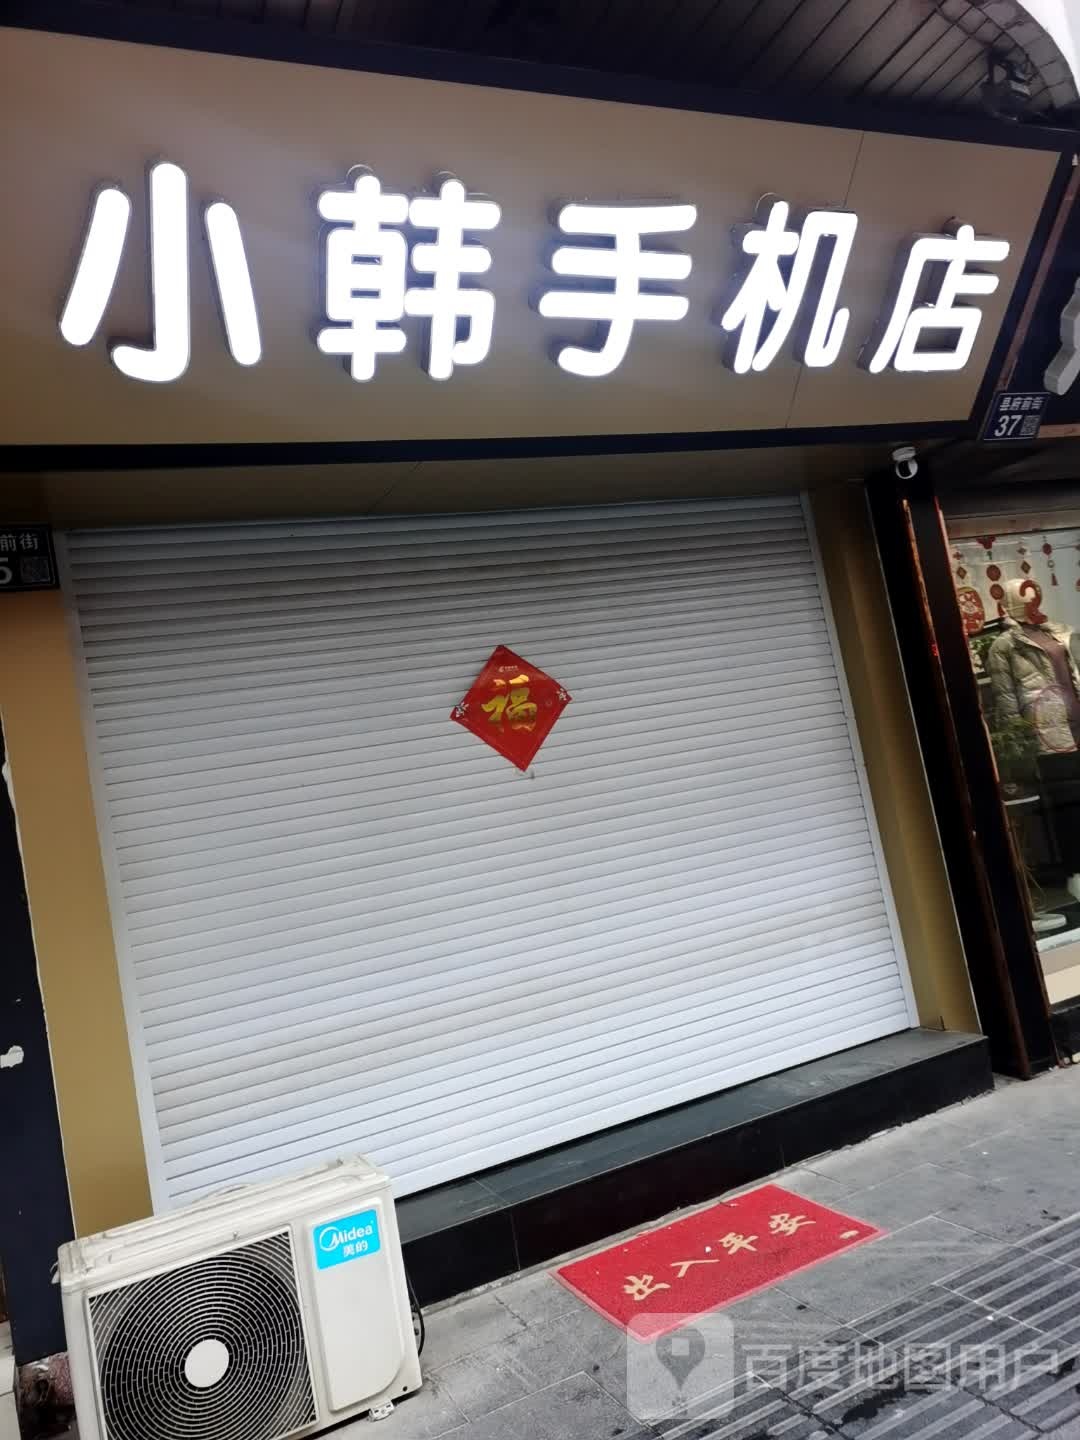 小韩手机店(府前街)